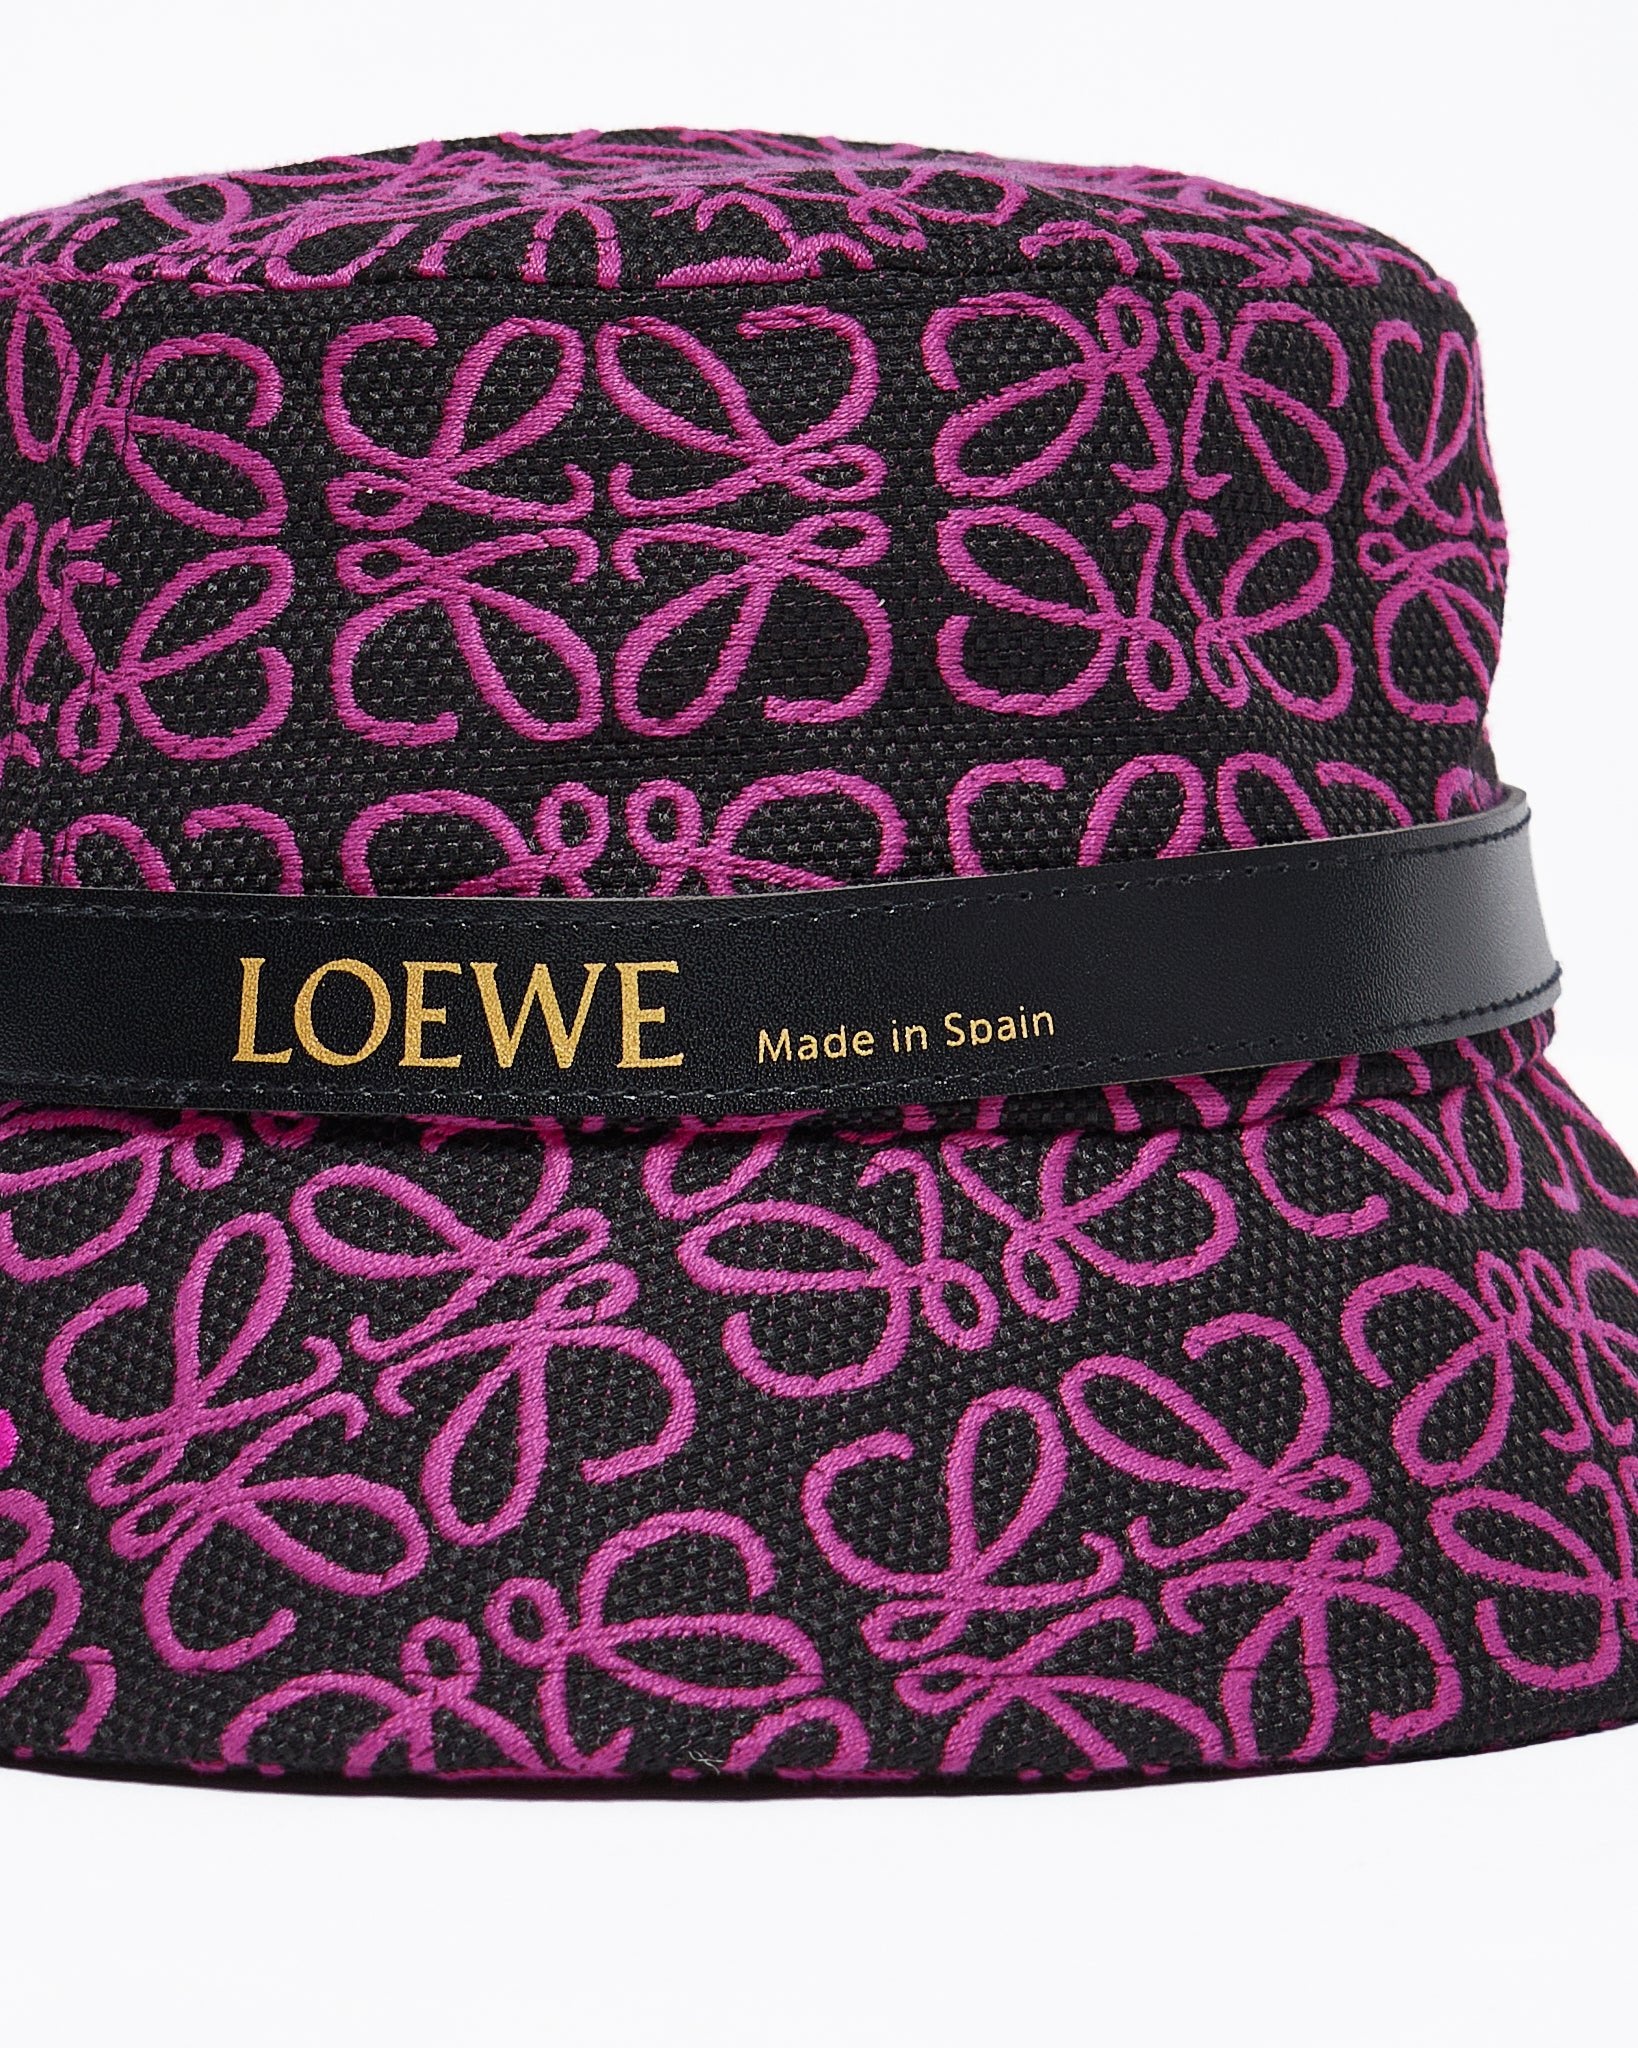 MOI OUTFIT-Loewe Monogram Bucket Hat 14.50